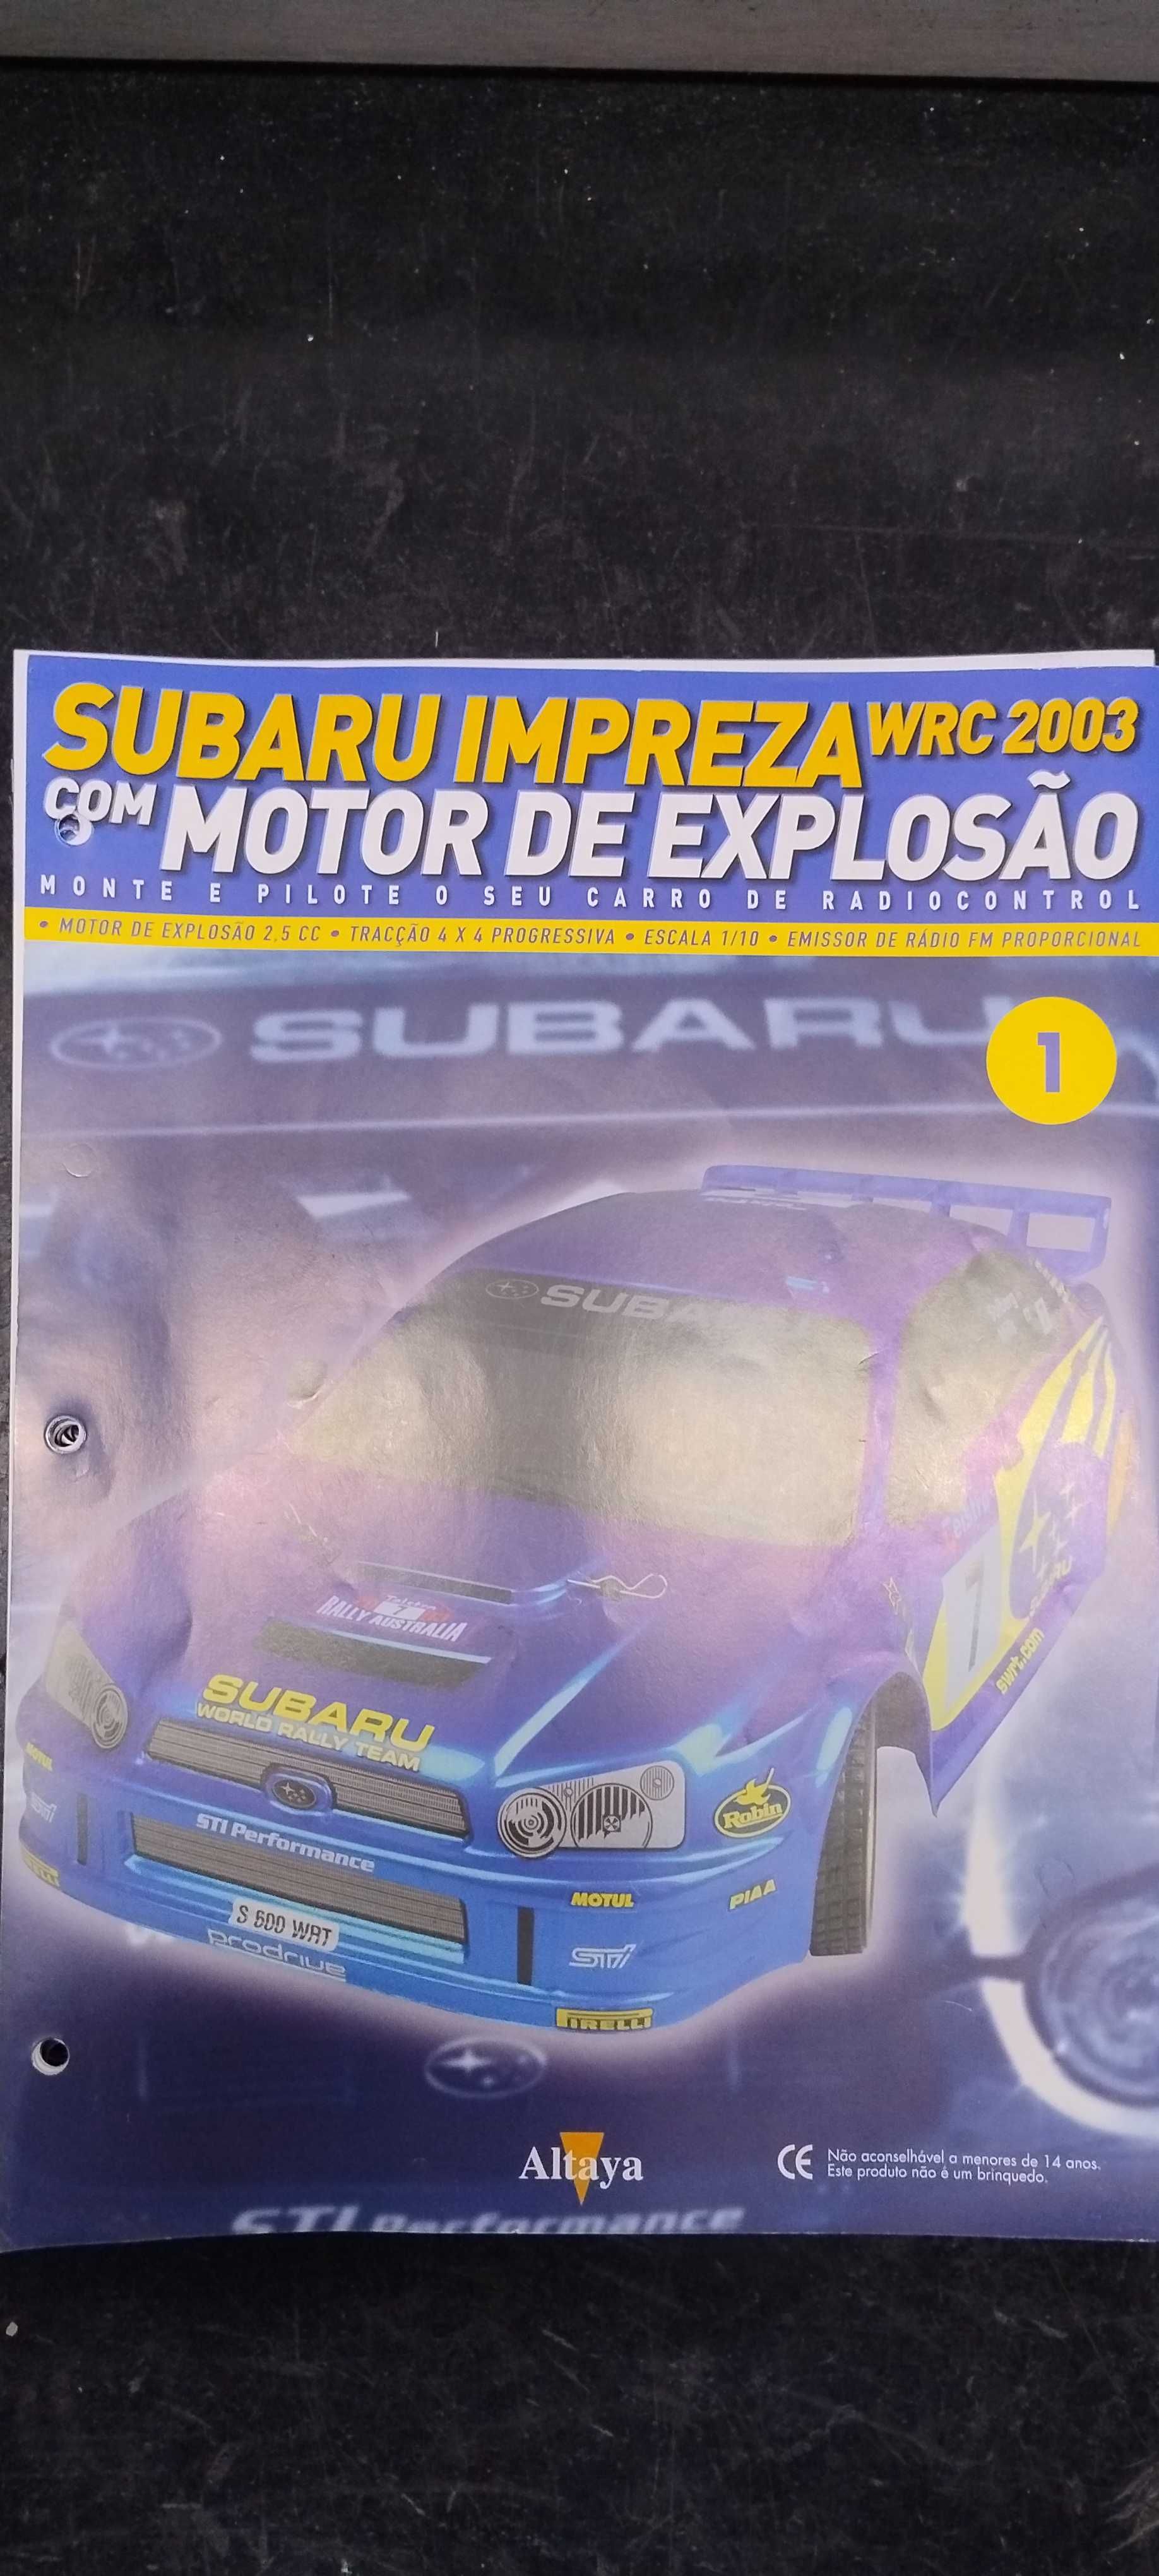 Subaru Impreza wrc 2003